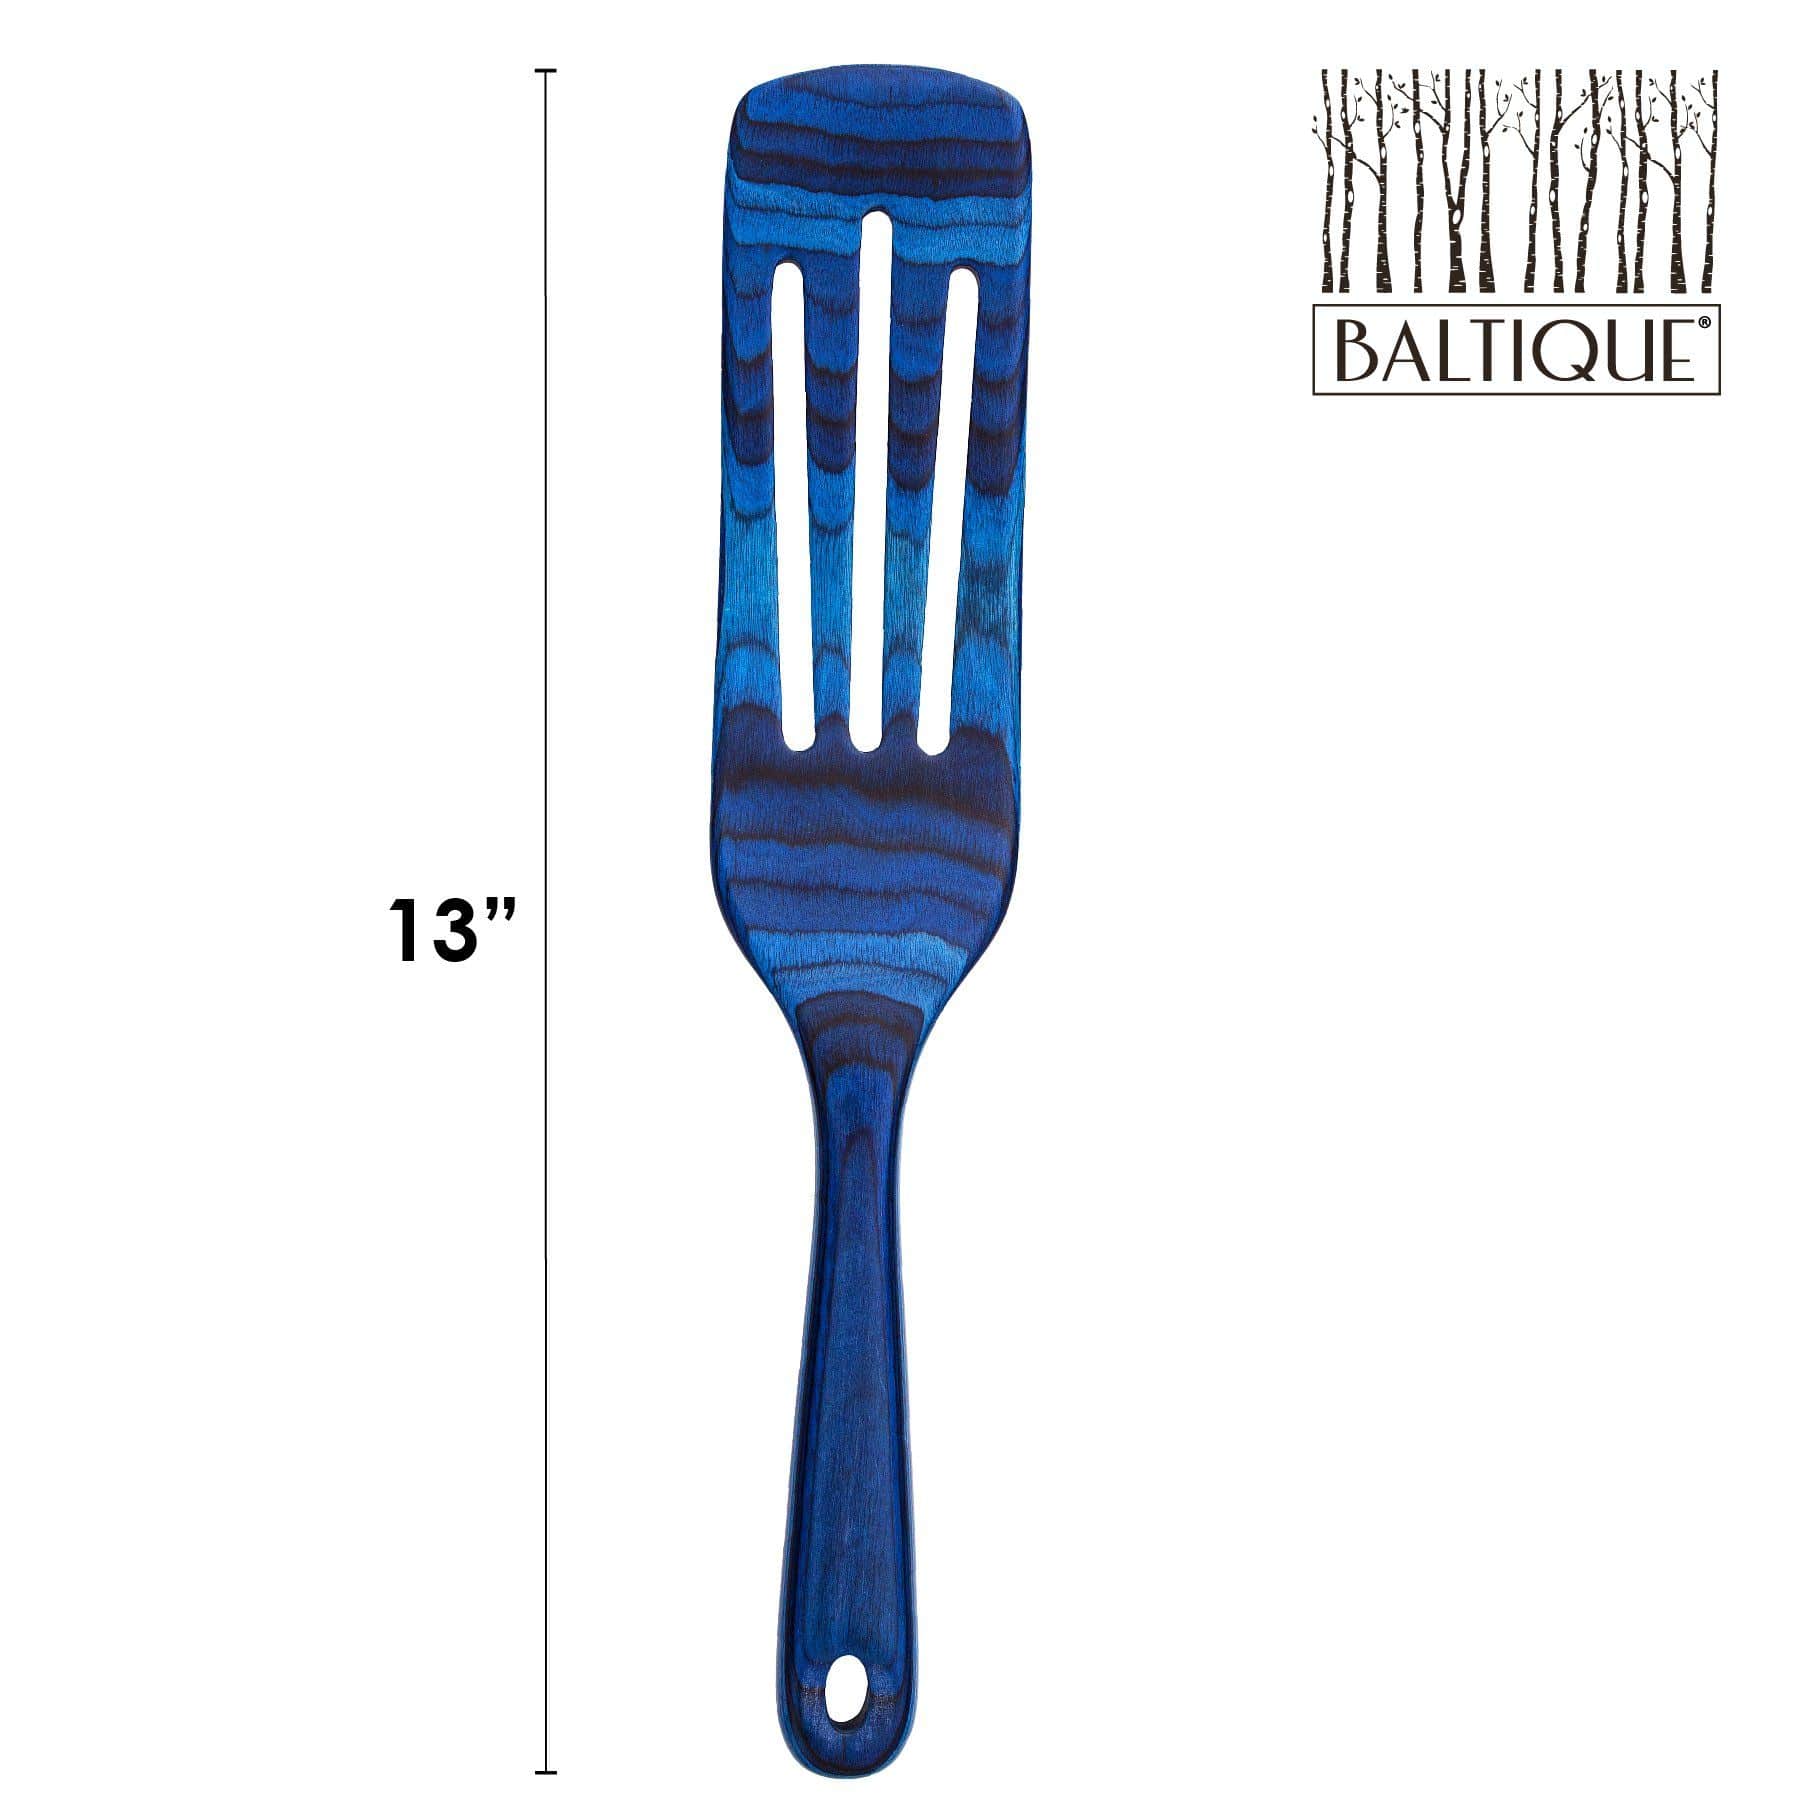 Baltique® Malta Collection Spurtle – Totally Bamboo